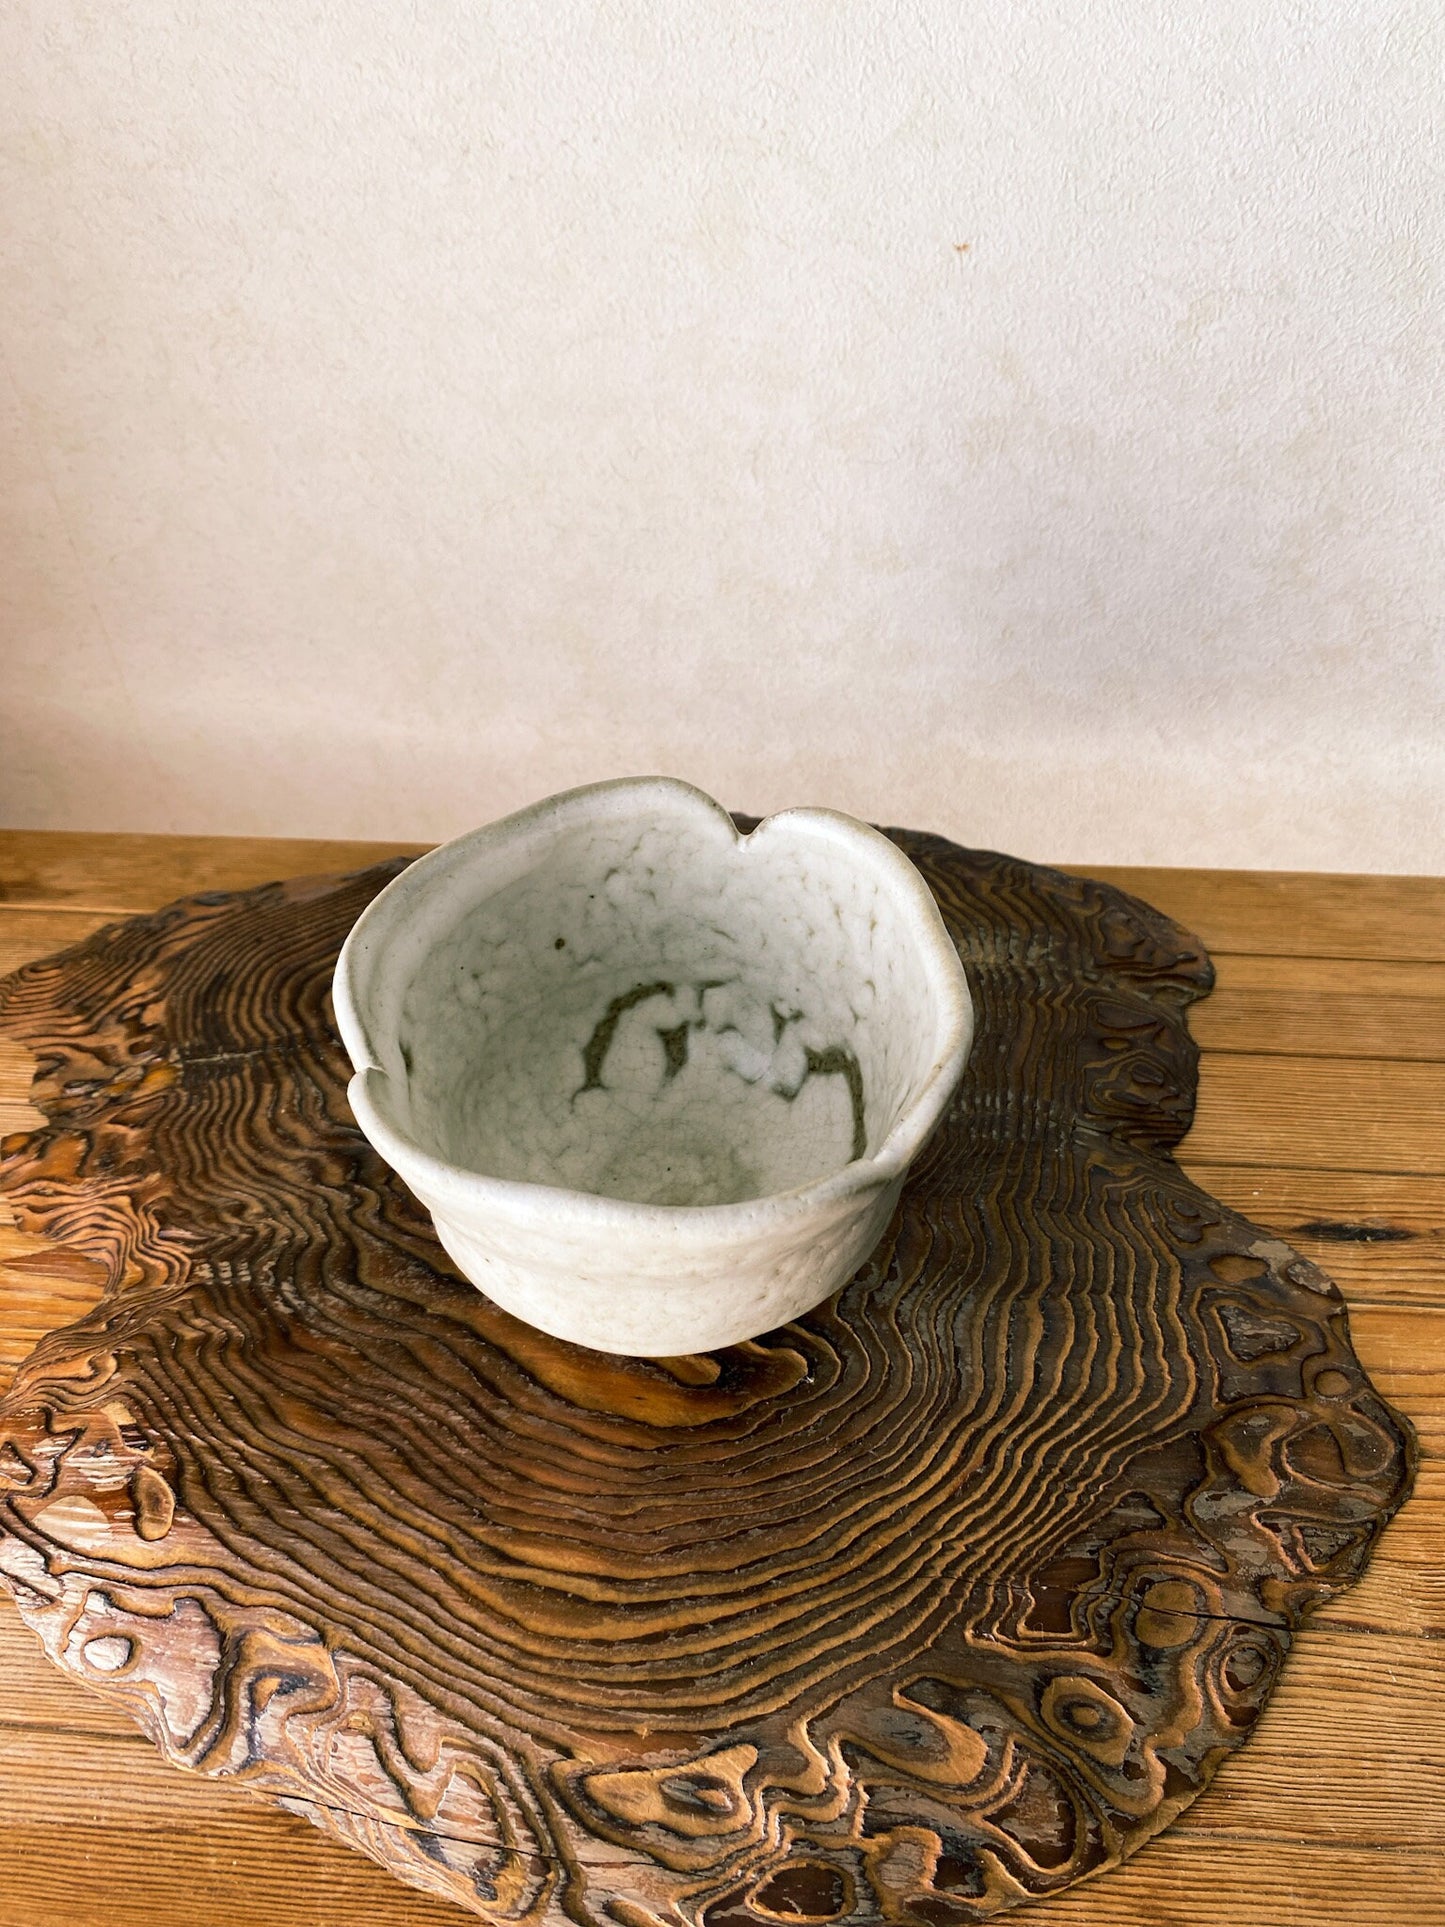 粉引 茶碗　Japanese Ceramic Saucer, Shigaraki Ware, Kohiki, Size 4.3" diameter 3.35" height